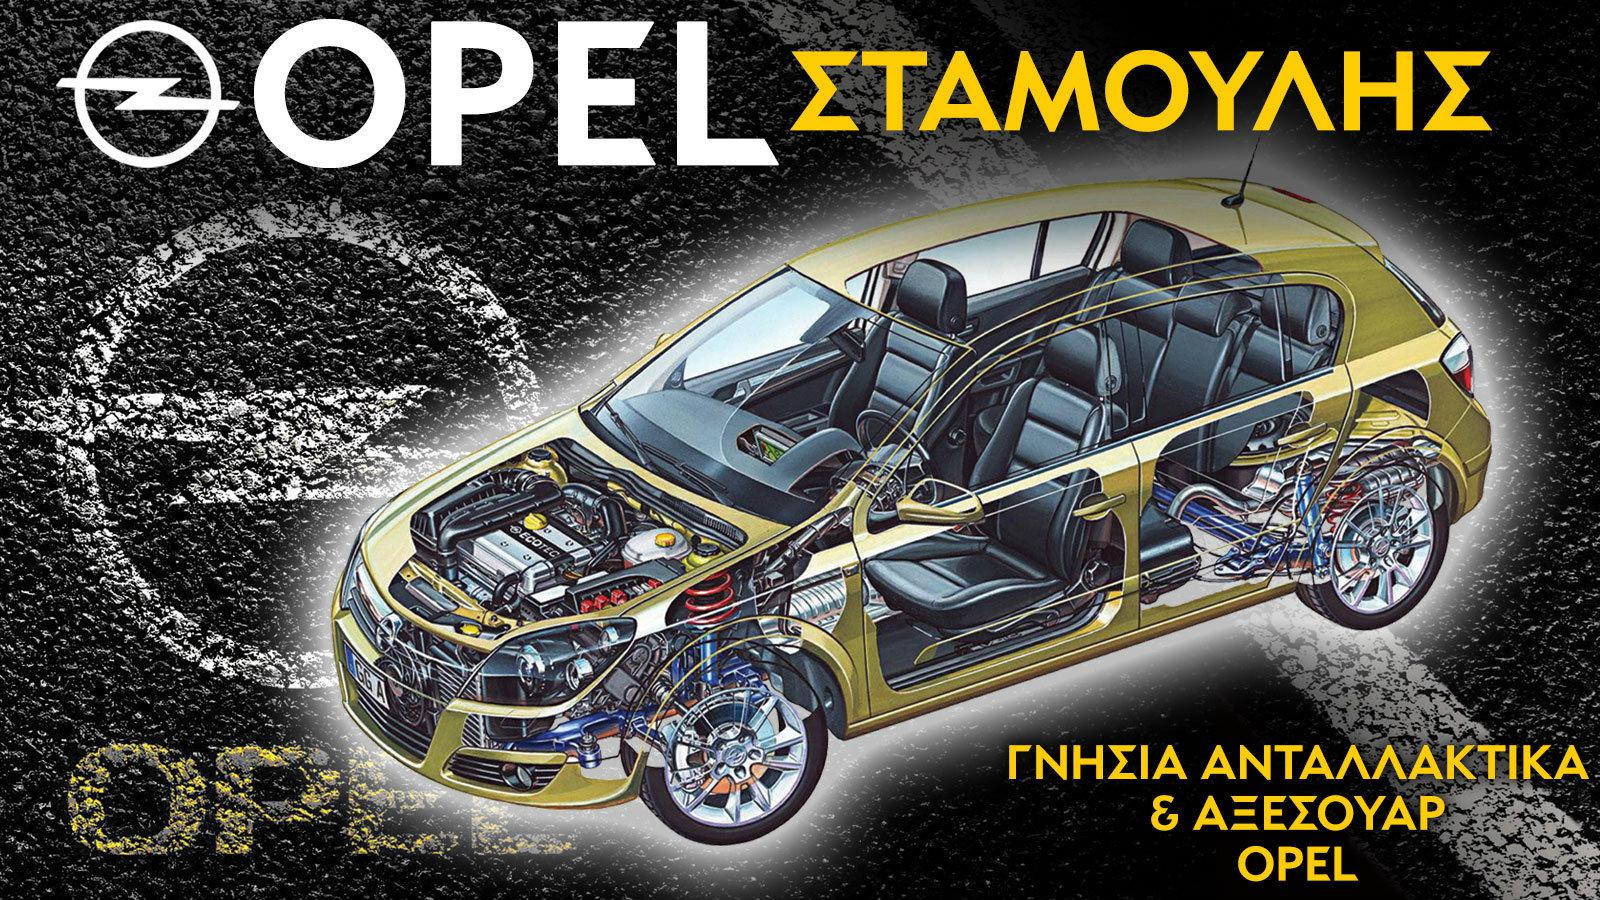 Ανταλλακτικά για Opel στο Νέο Κόσμο - Σταμούλης